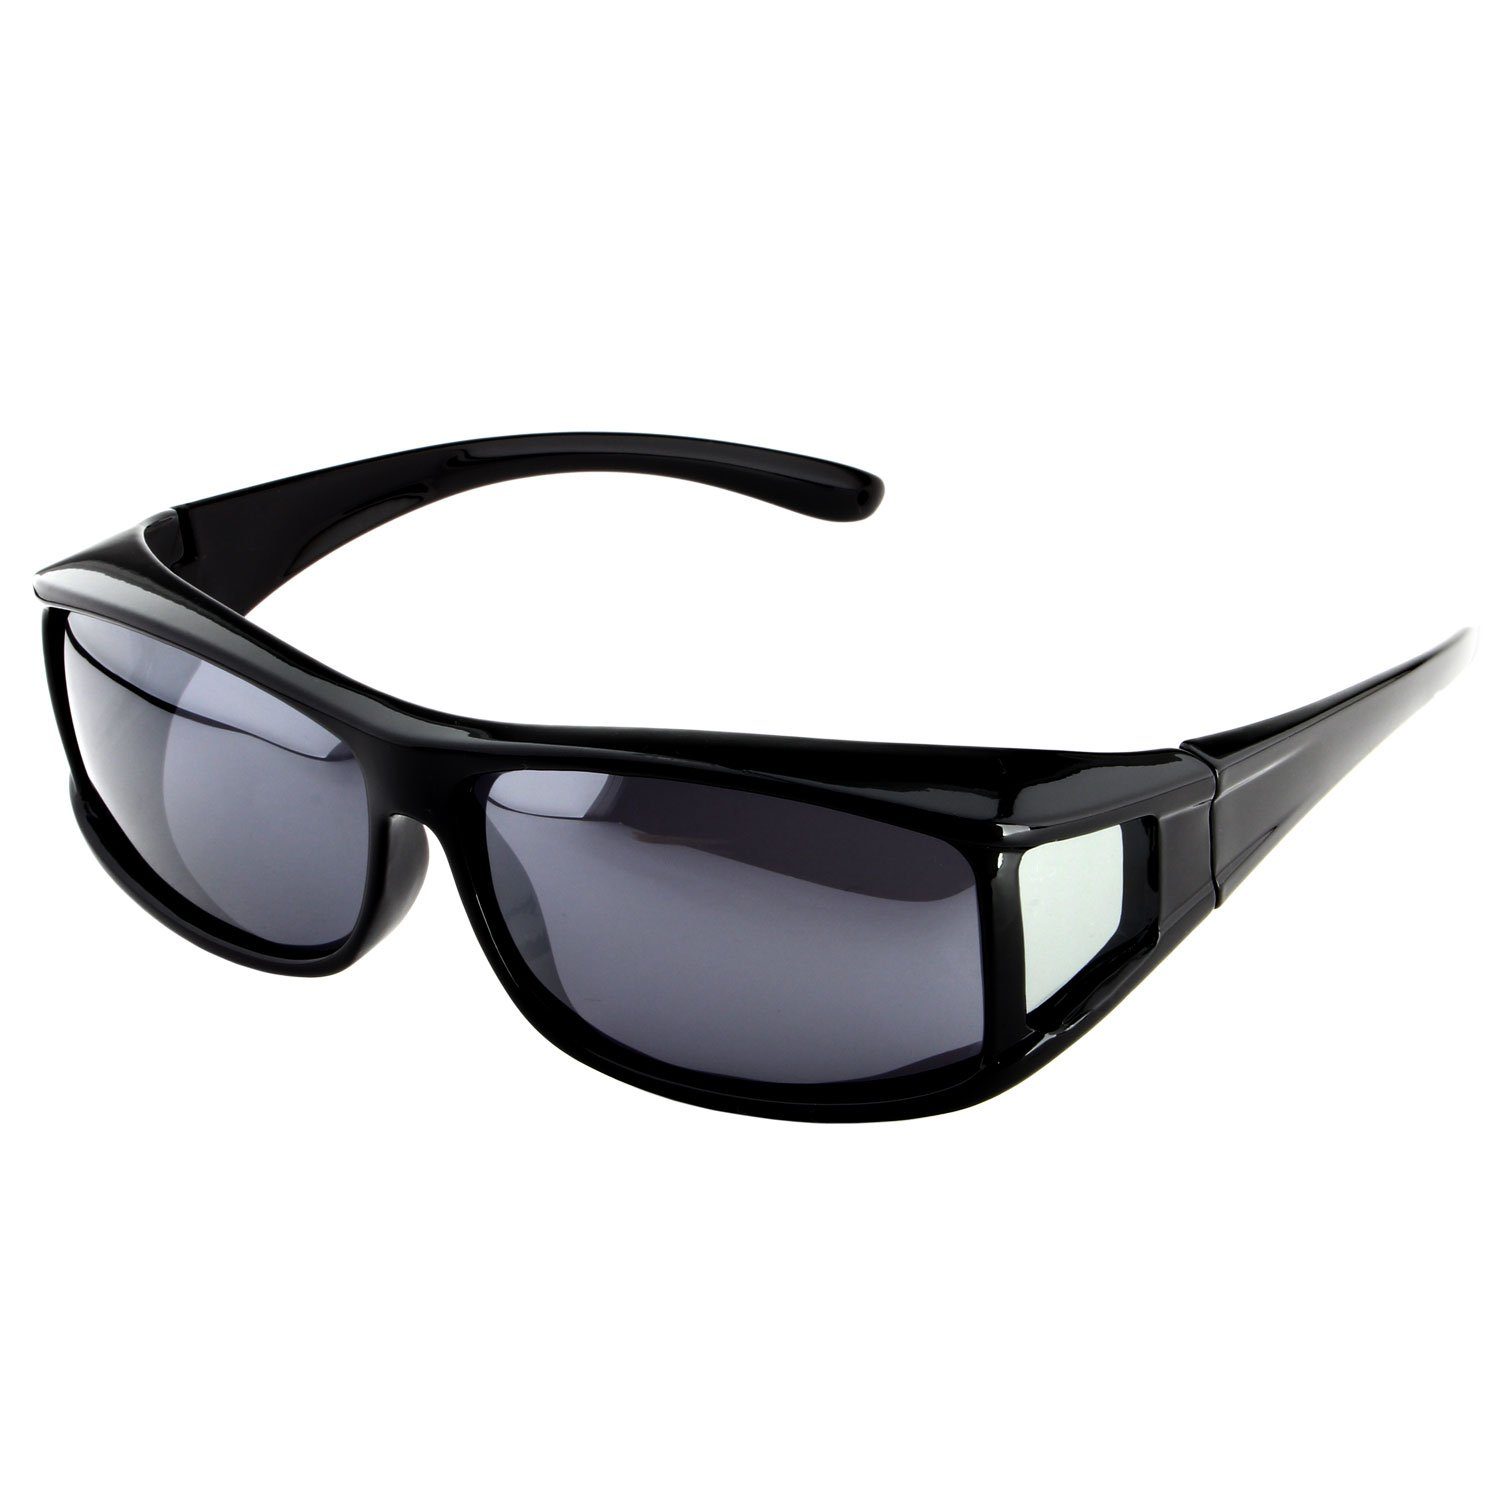 ActiveSol SUNGLASSES Sonnenbrille Überziehsonnenbrille Classic für Herren polarisierte, UV 400 Schwarz Glänzend